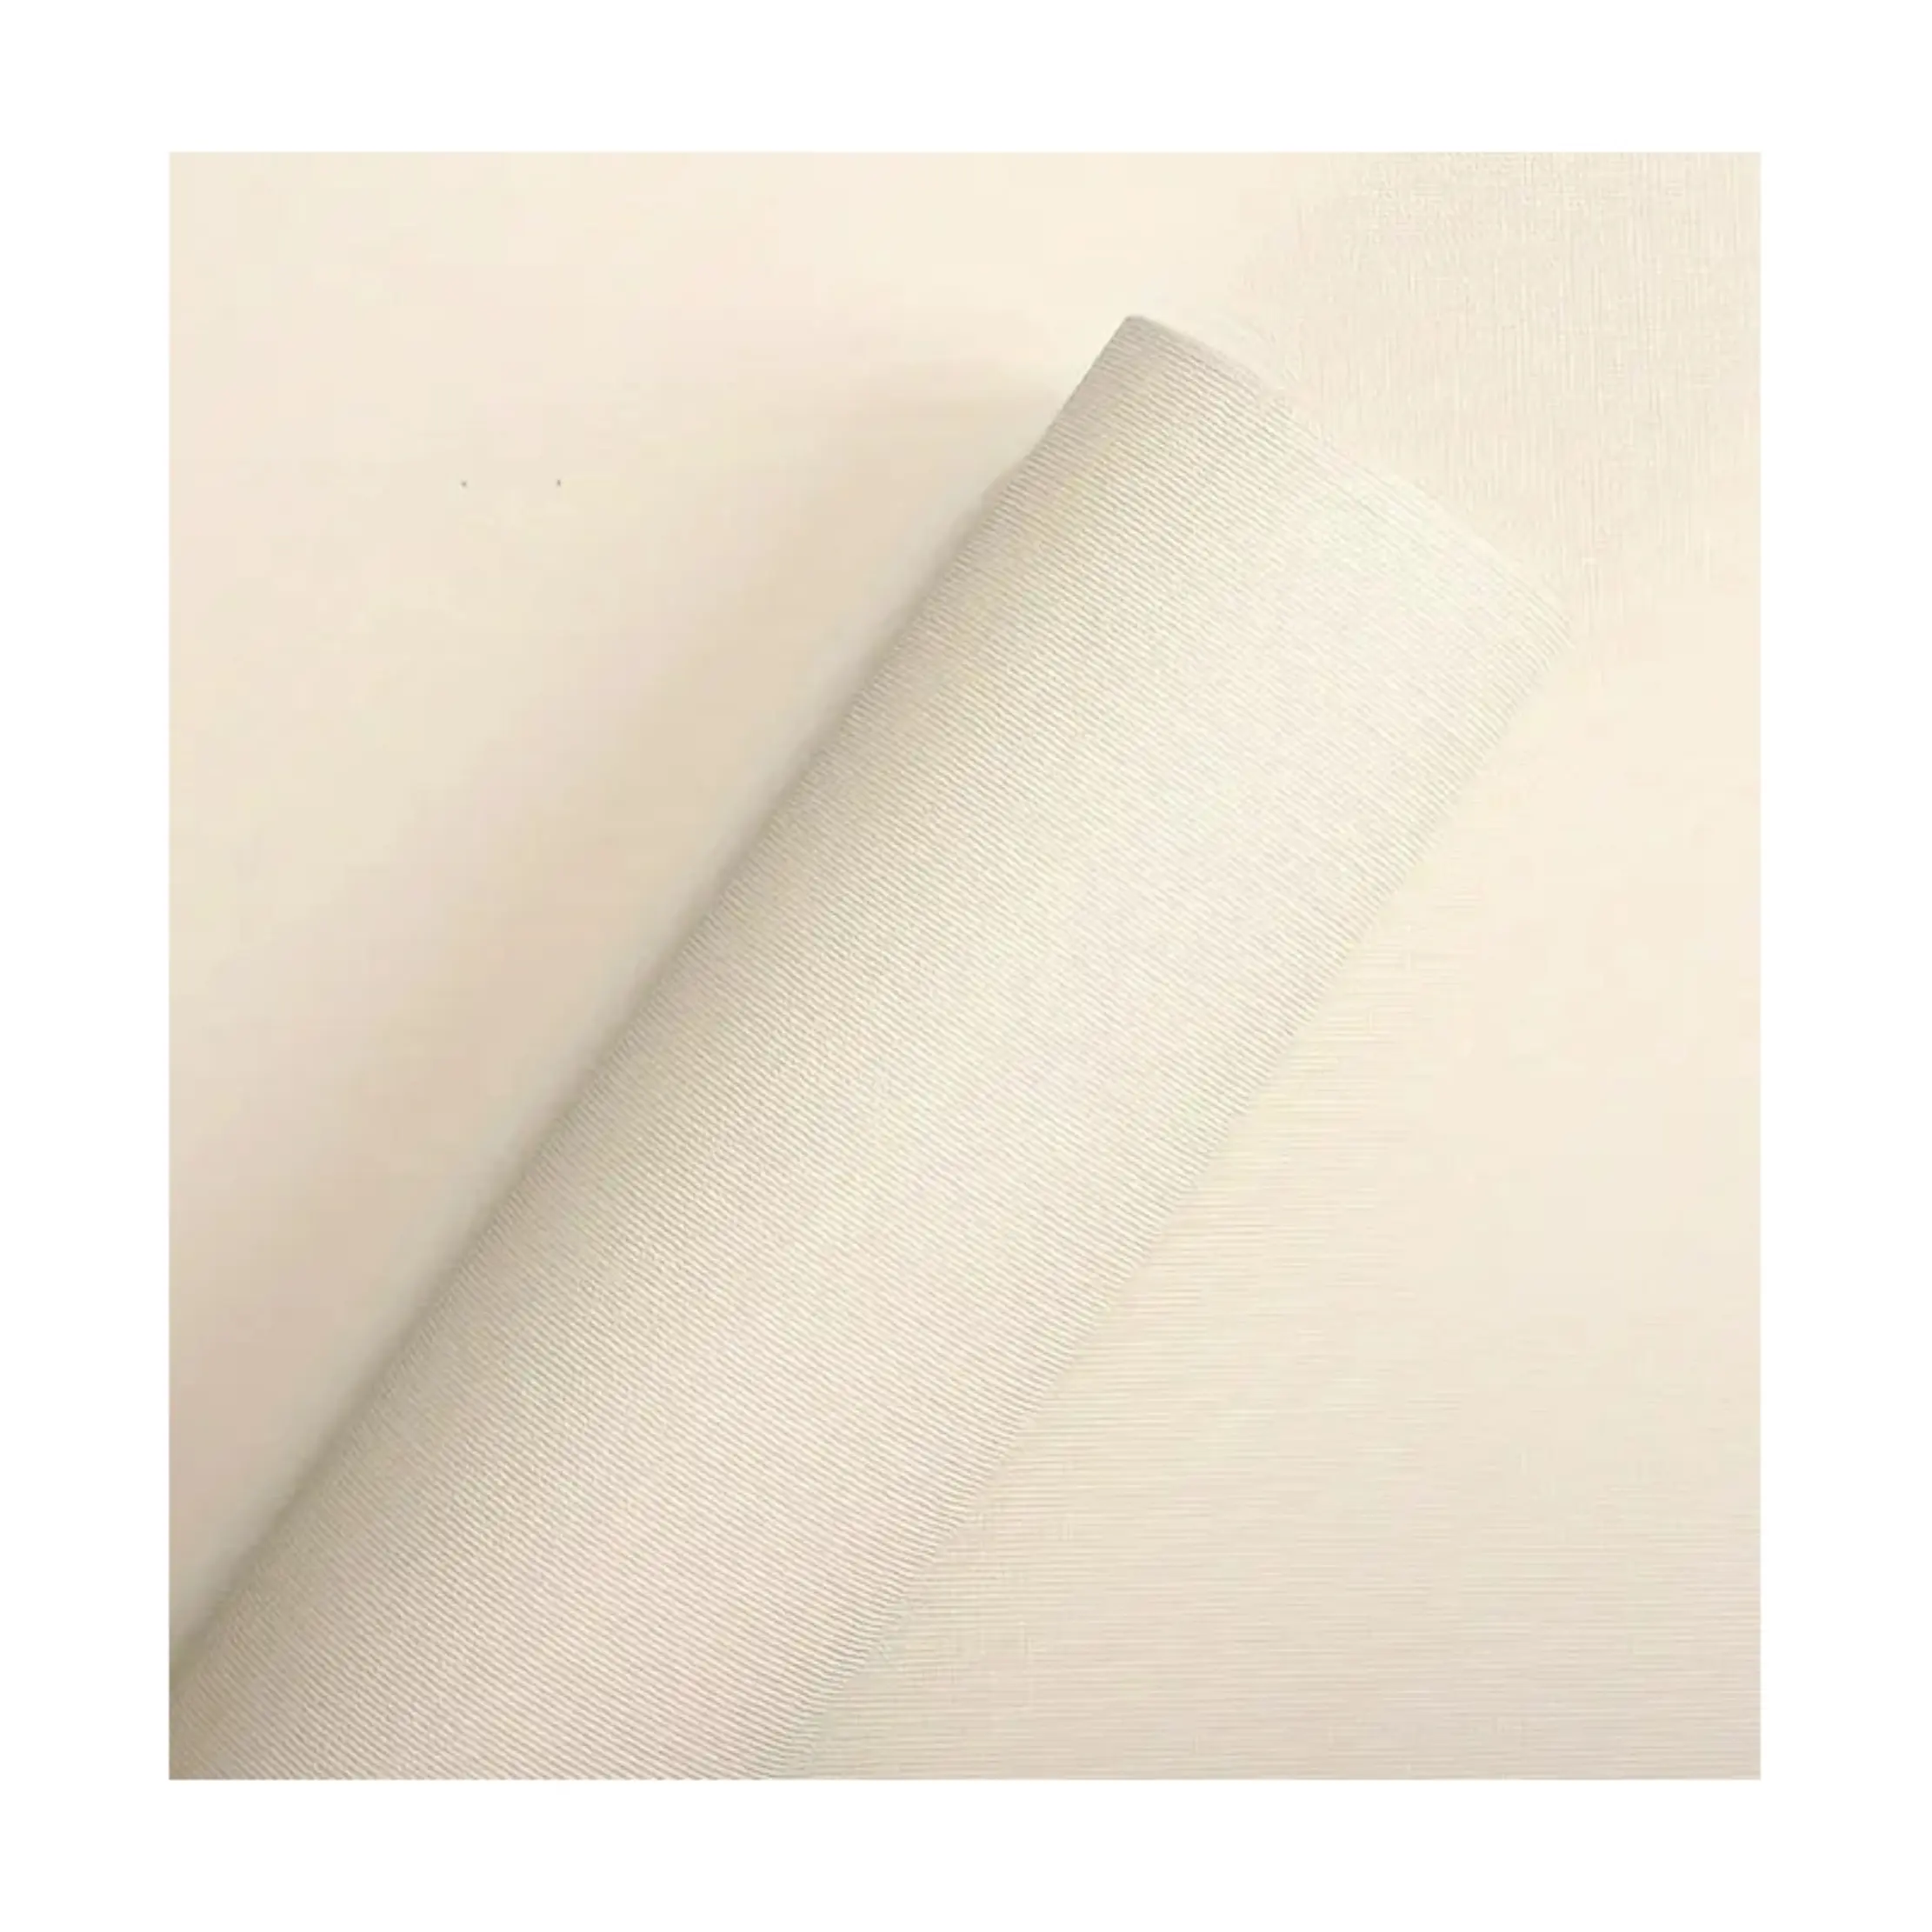 粘着性が強く、貼り付けやすい新しいマカロン色の壁紙のロール